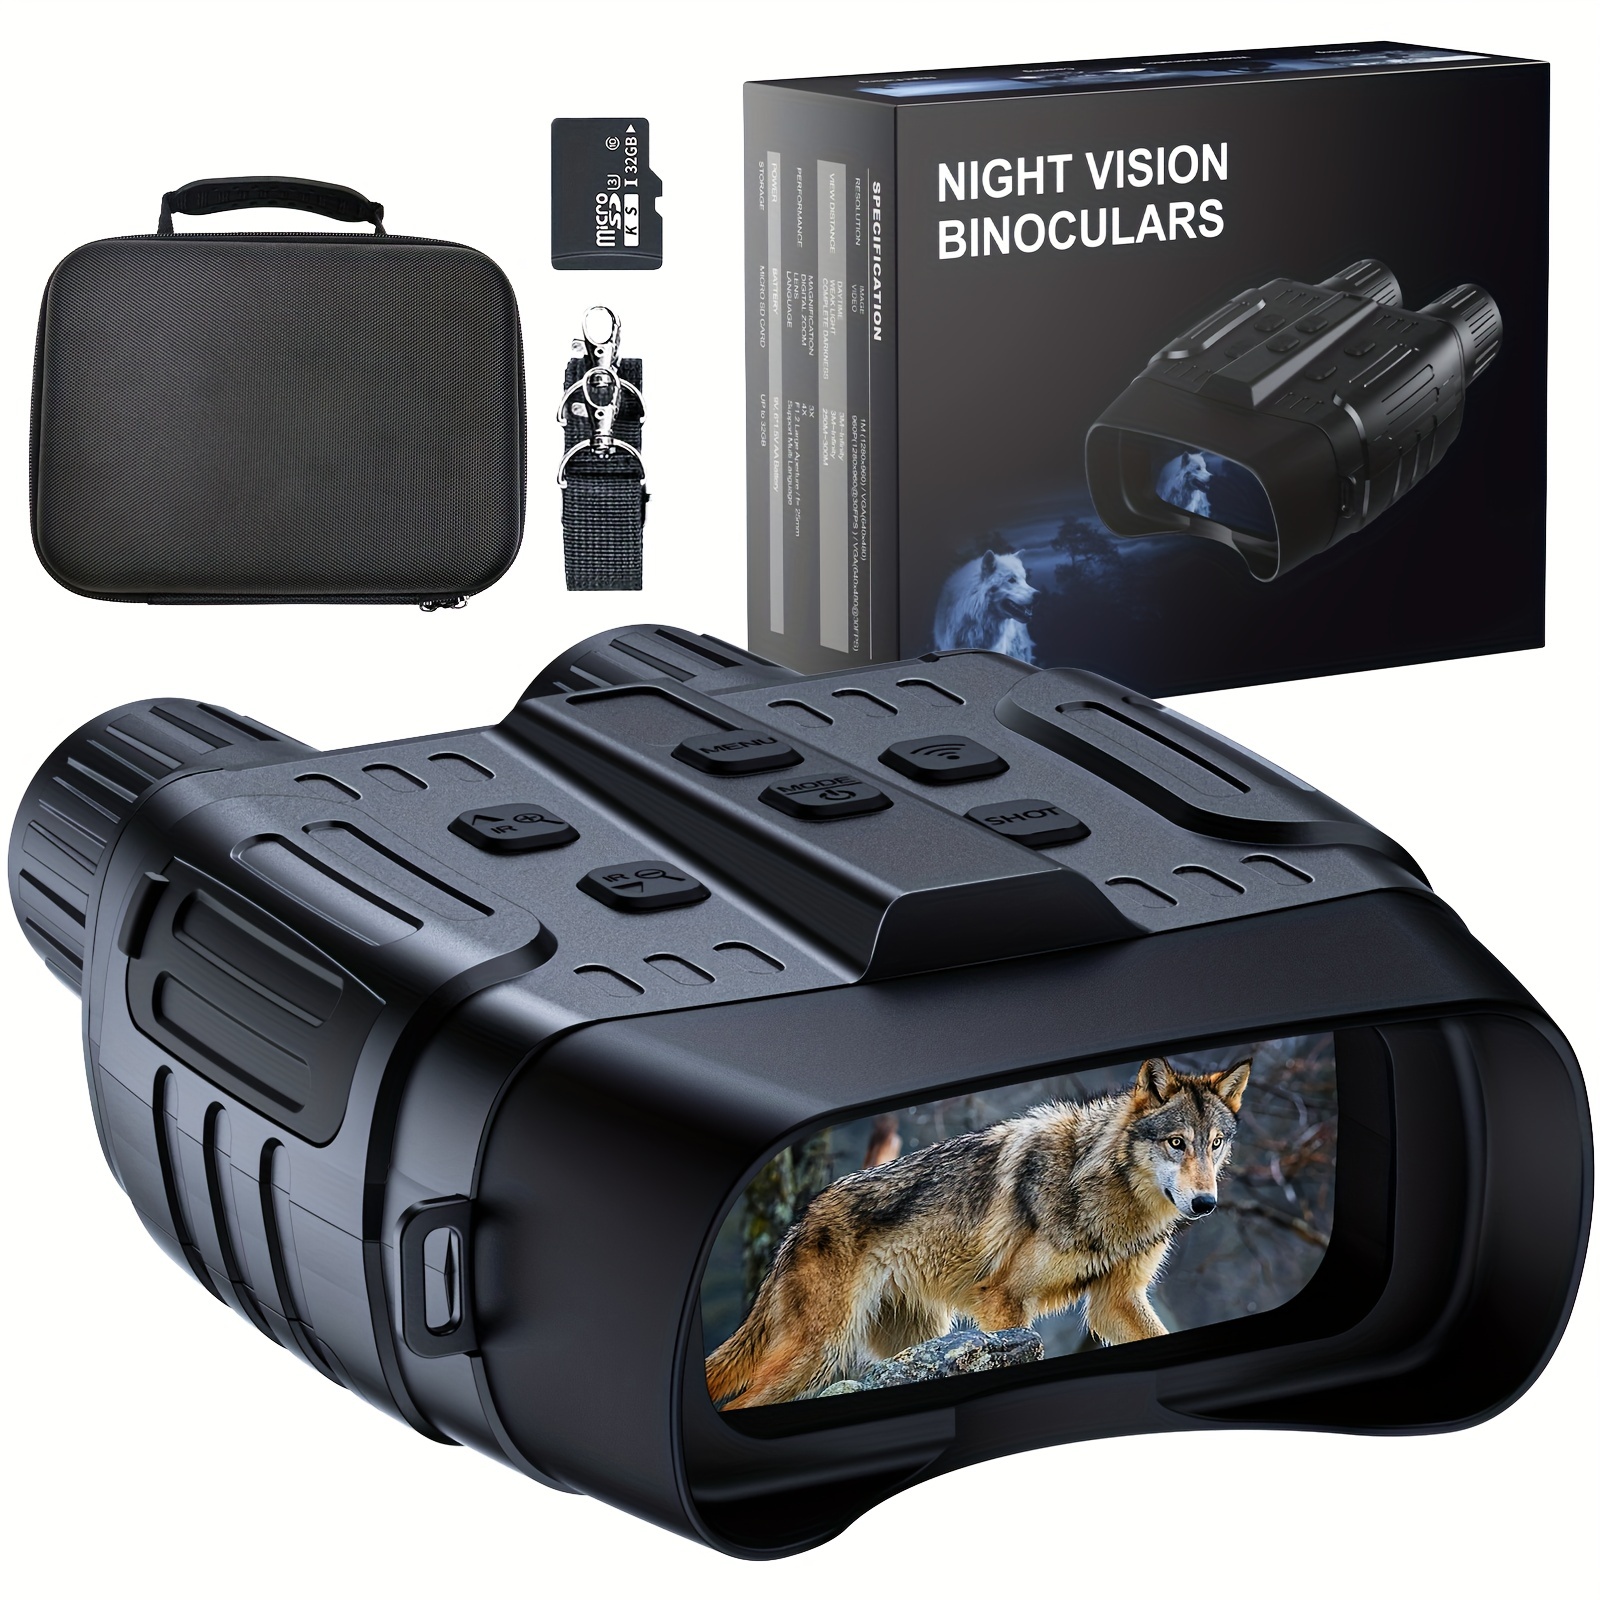 Gafas De Visión Nocturna, Binoculares De Visión Nocturna, Gafas Infrarrojas  Digitales Con Pantalla Para Ver 984 Pies/300 M En 100% Oscuridad, Video FH